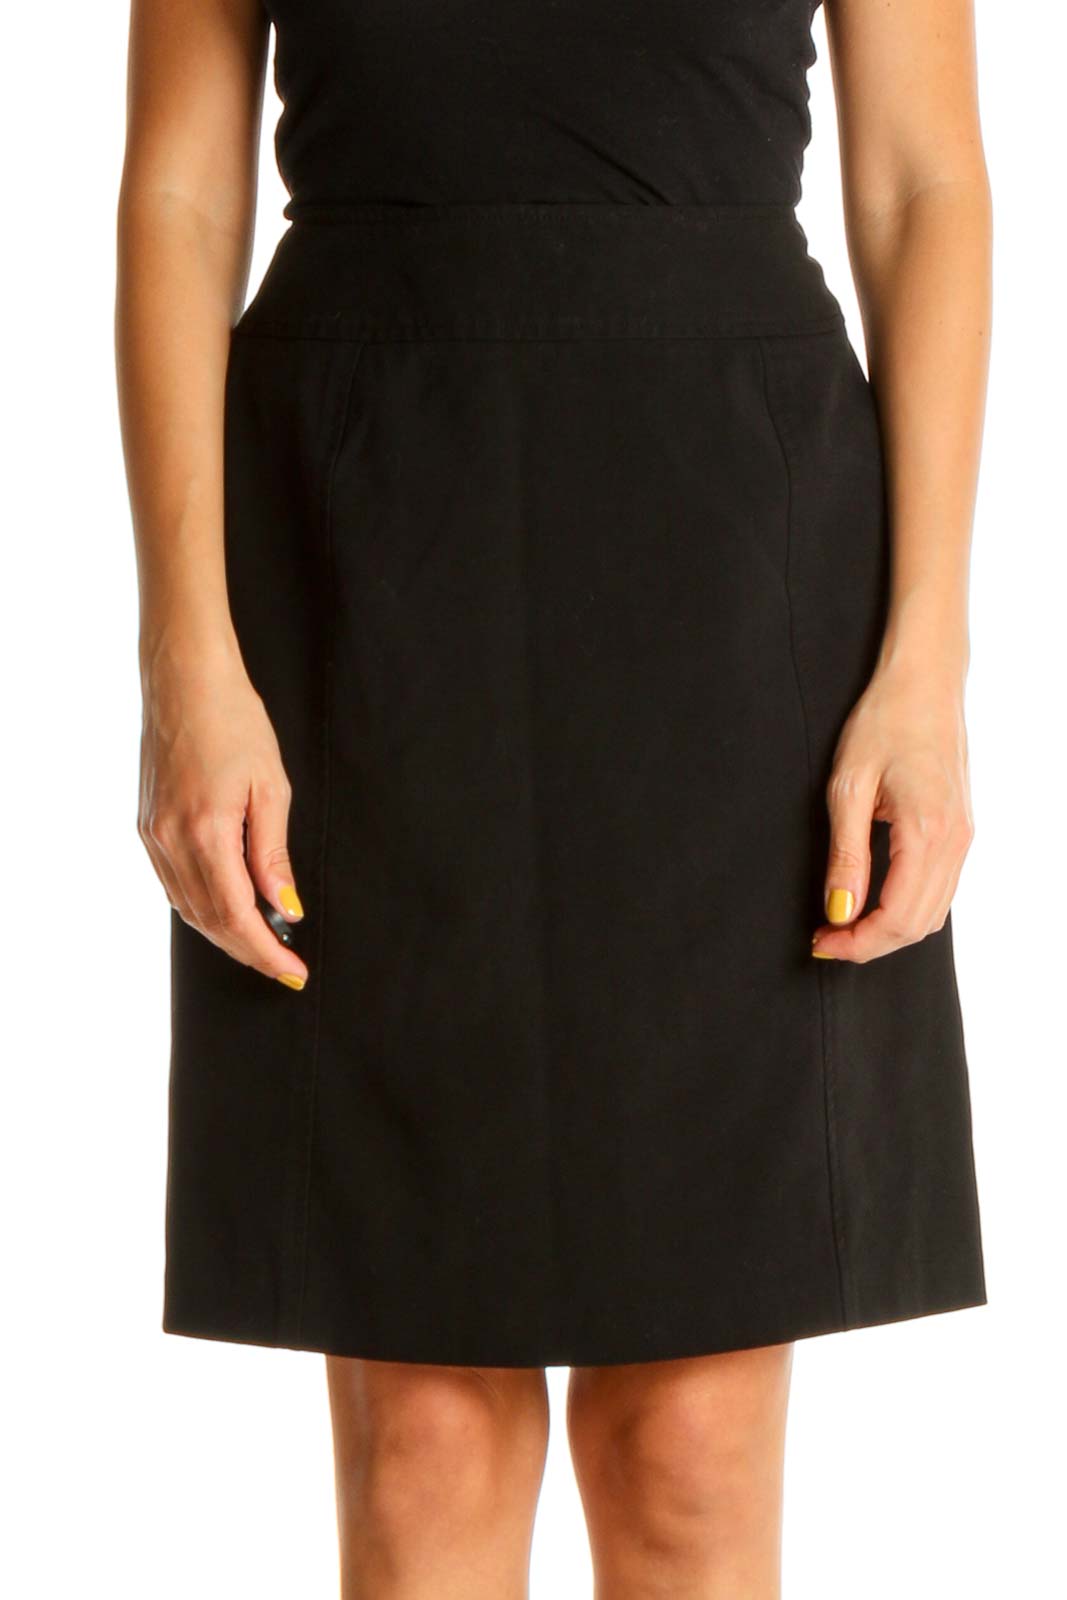 Black Solid Brunch A-Line Skirt Front